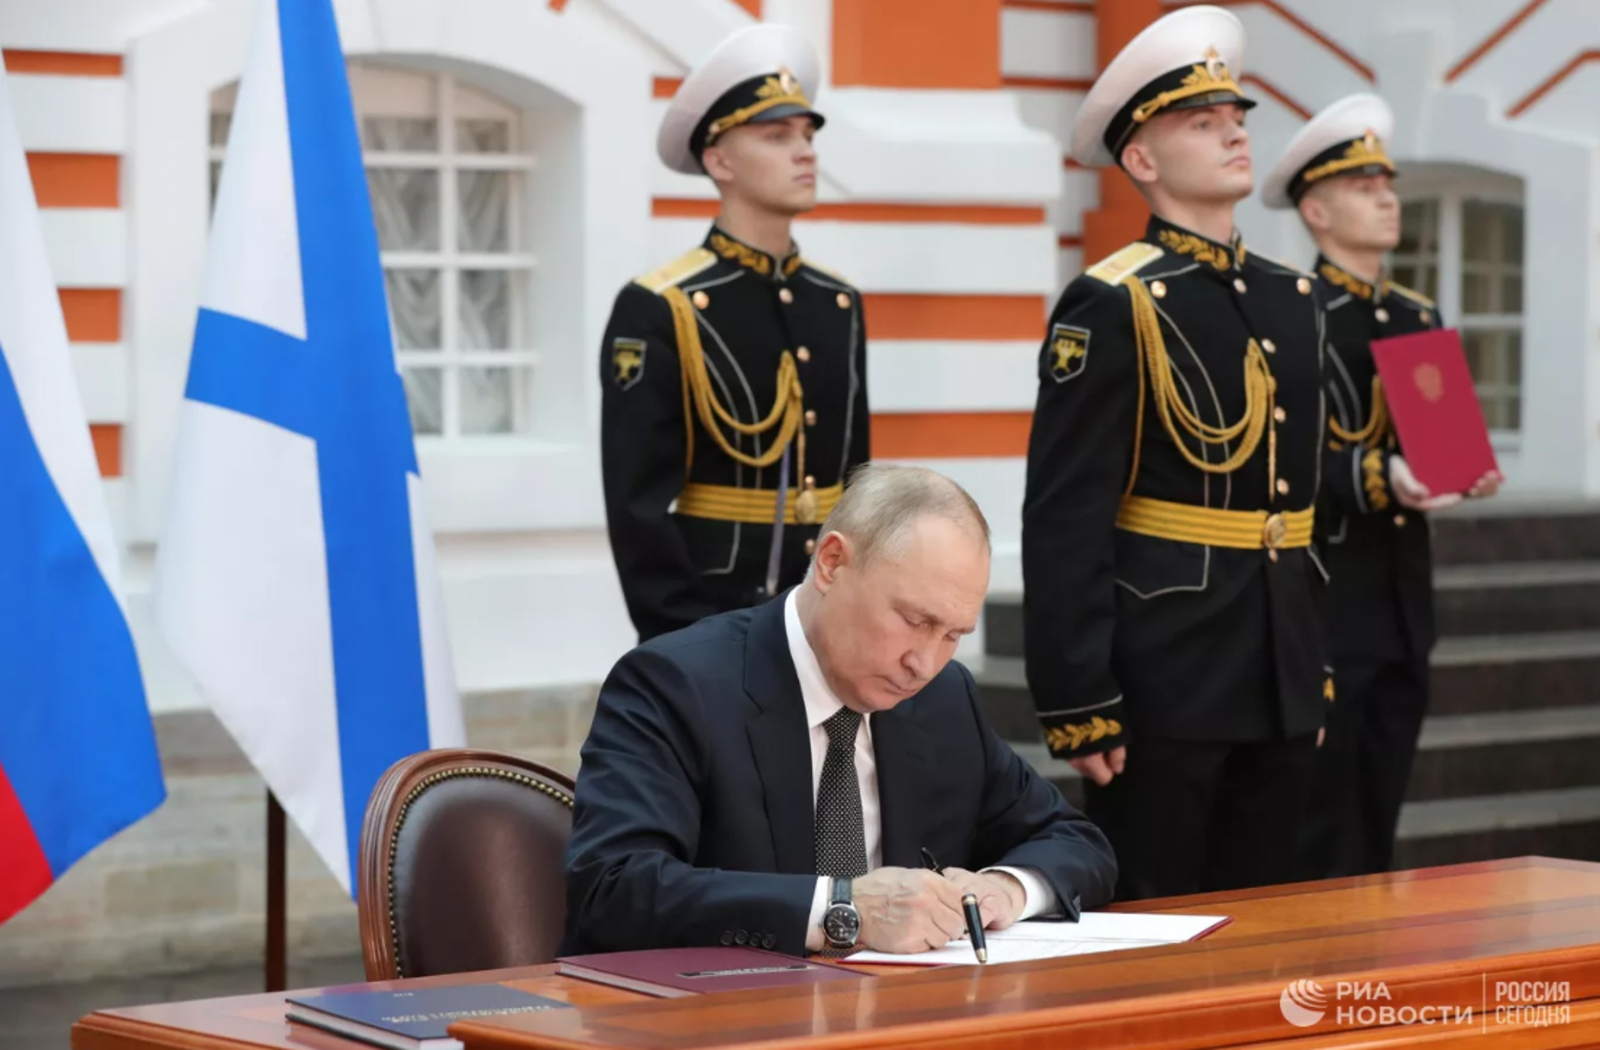 Президент Путин подписал указы об утверждении Морской доктрины и Корабельного устава ВМФ